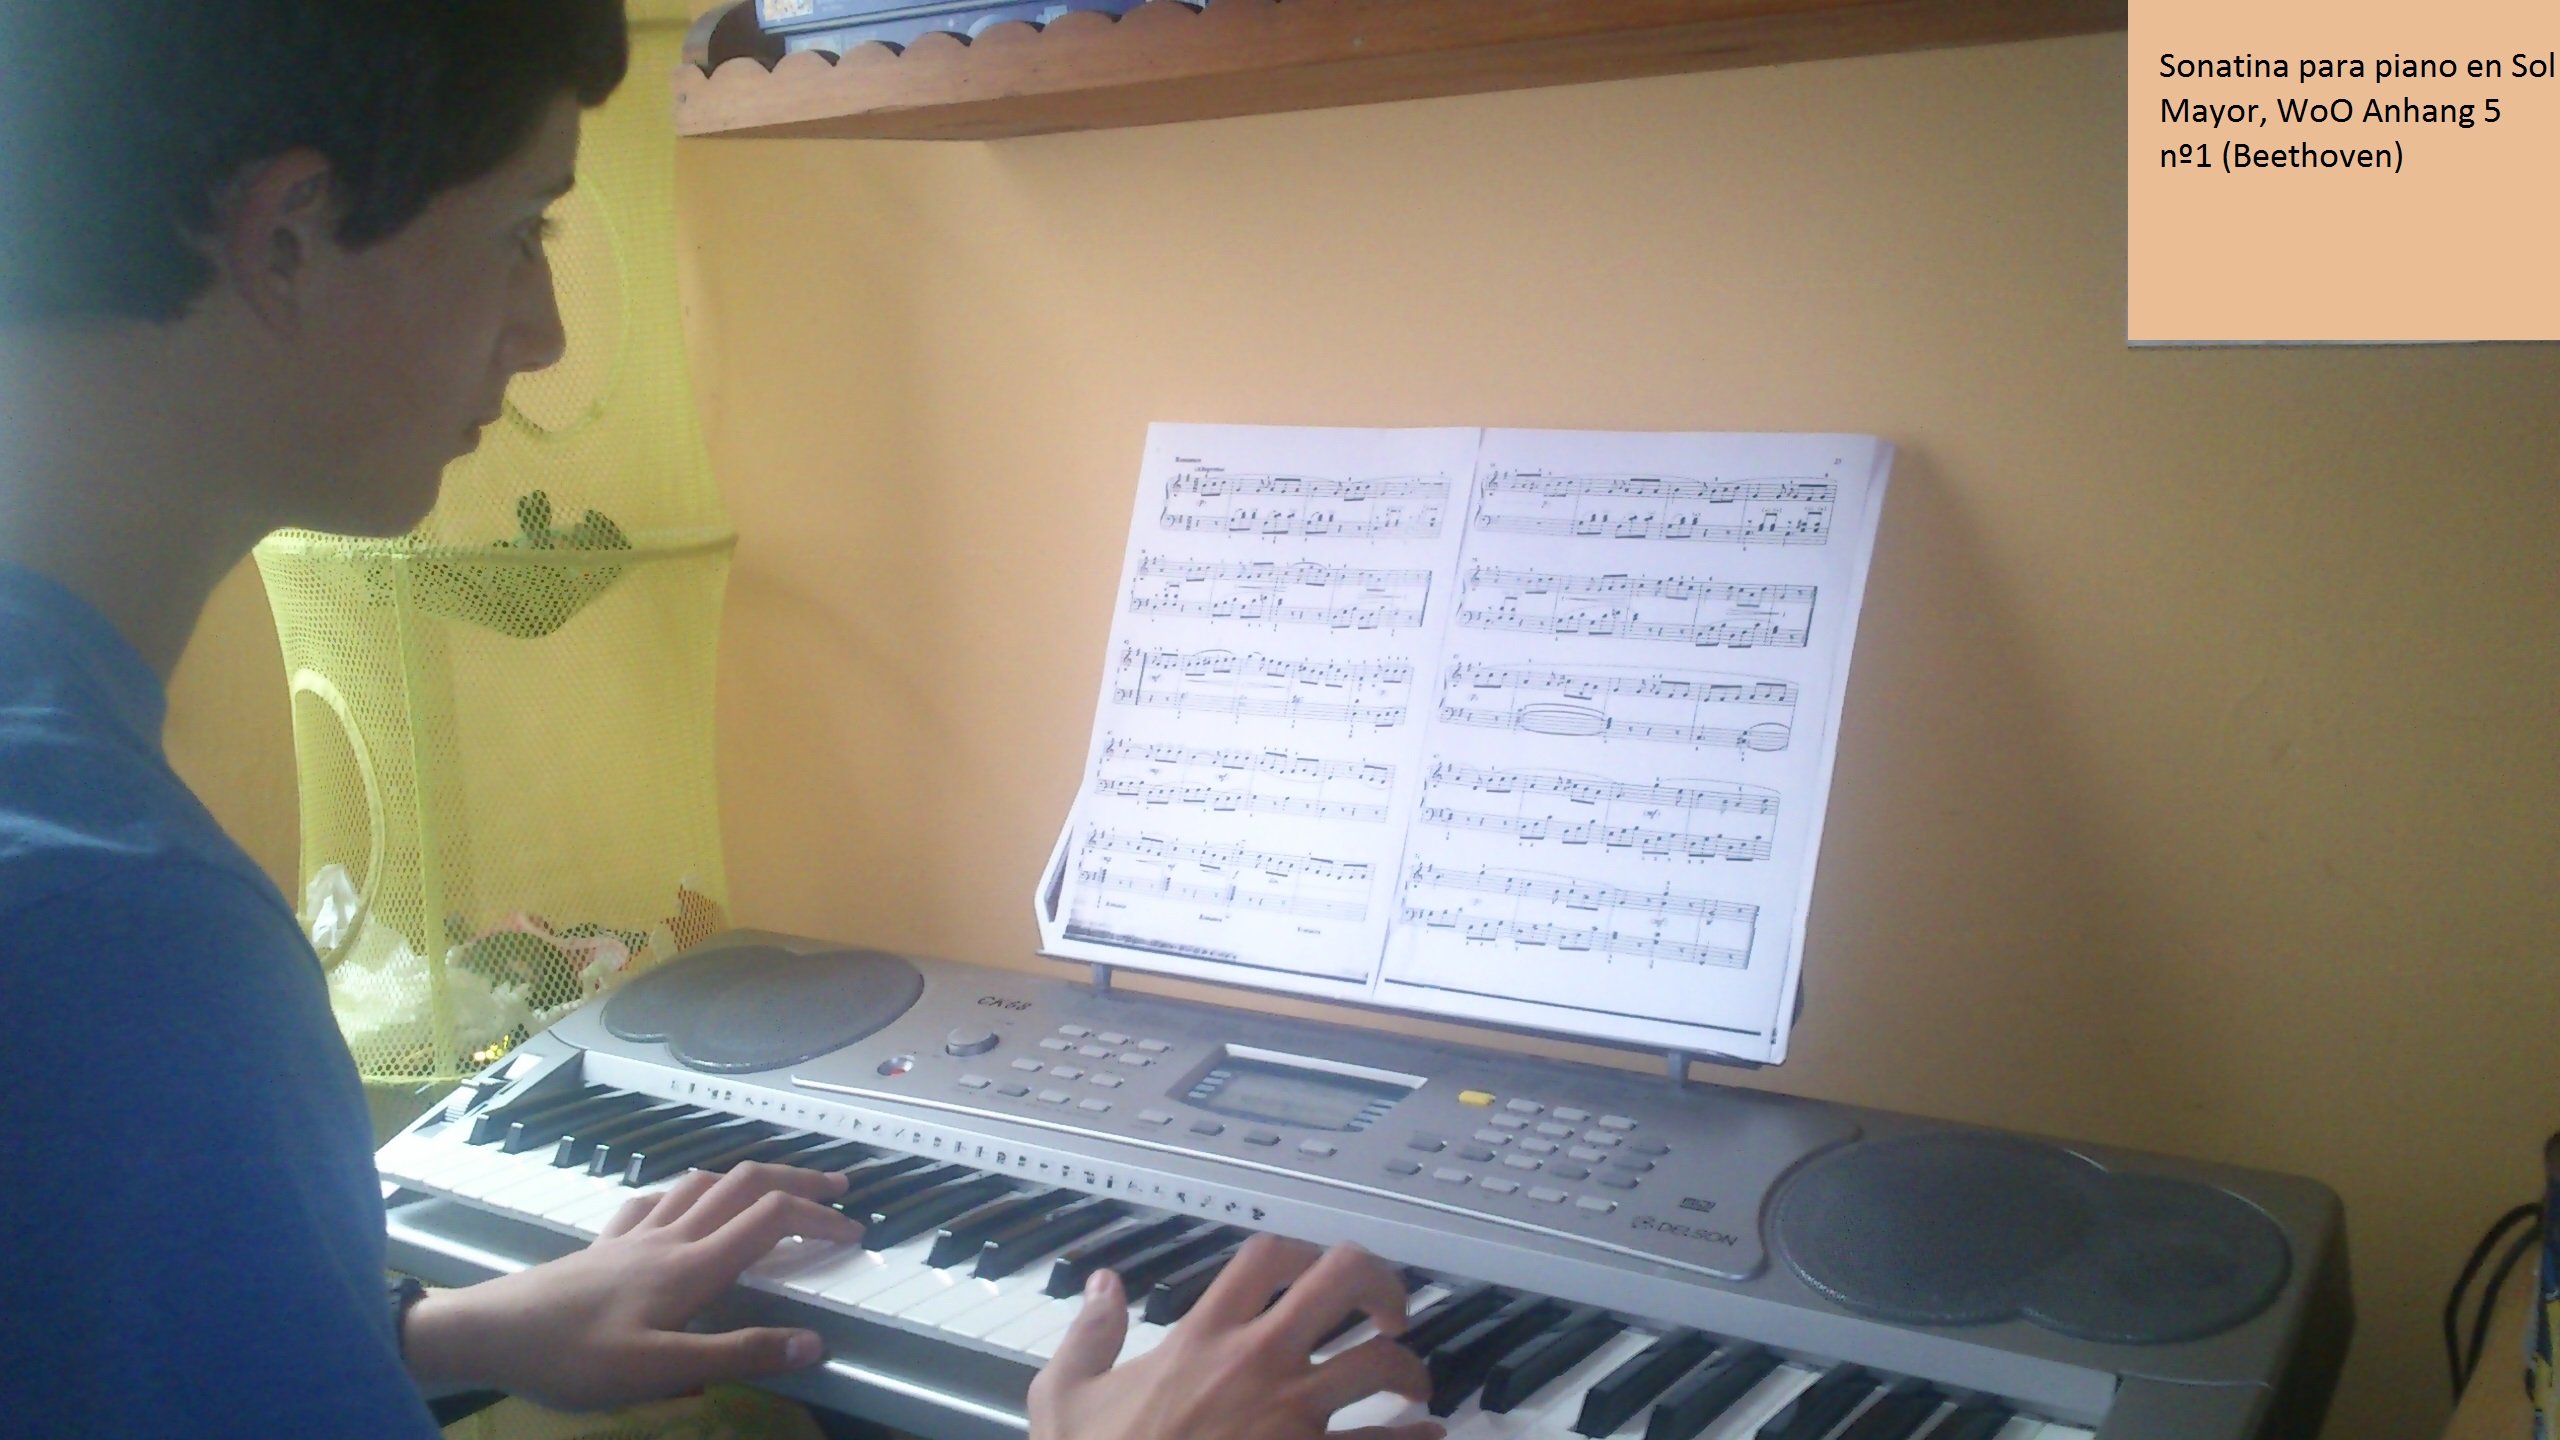 Carlos con la partitura de la Sonatina en Sol Mayor, de Beethoven 